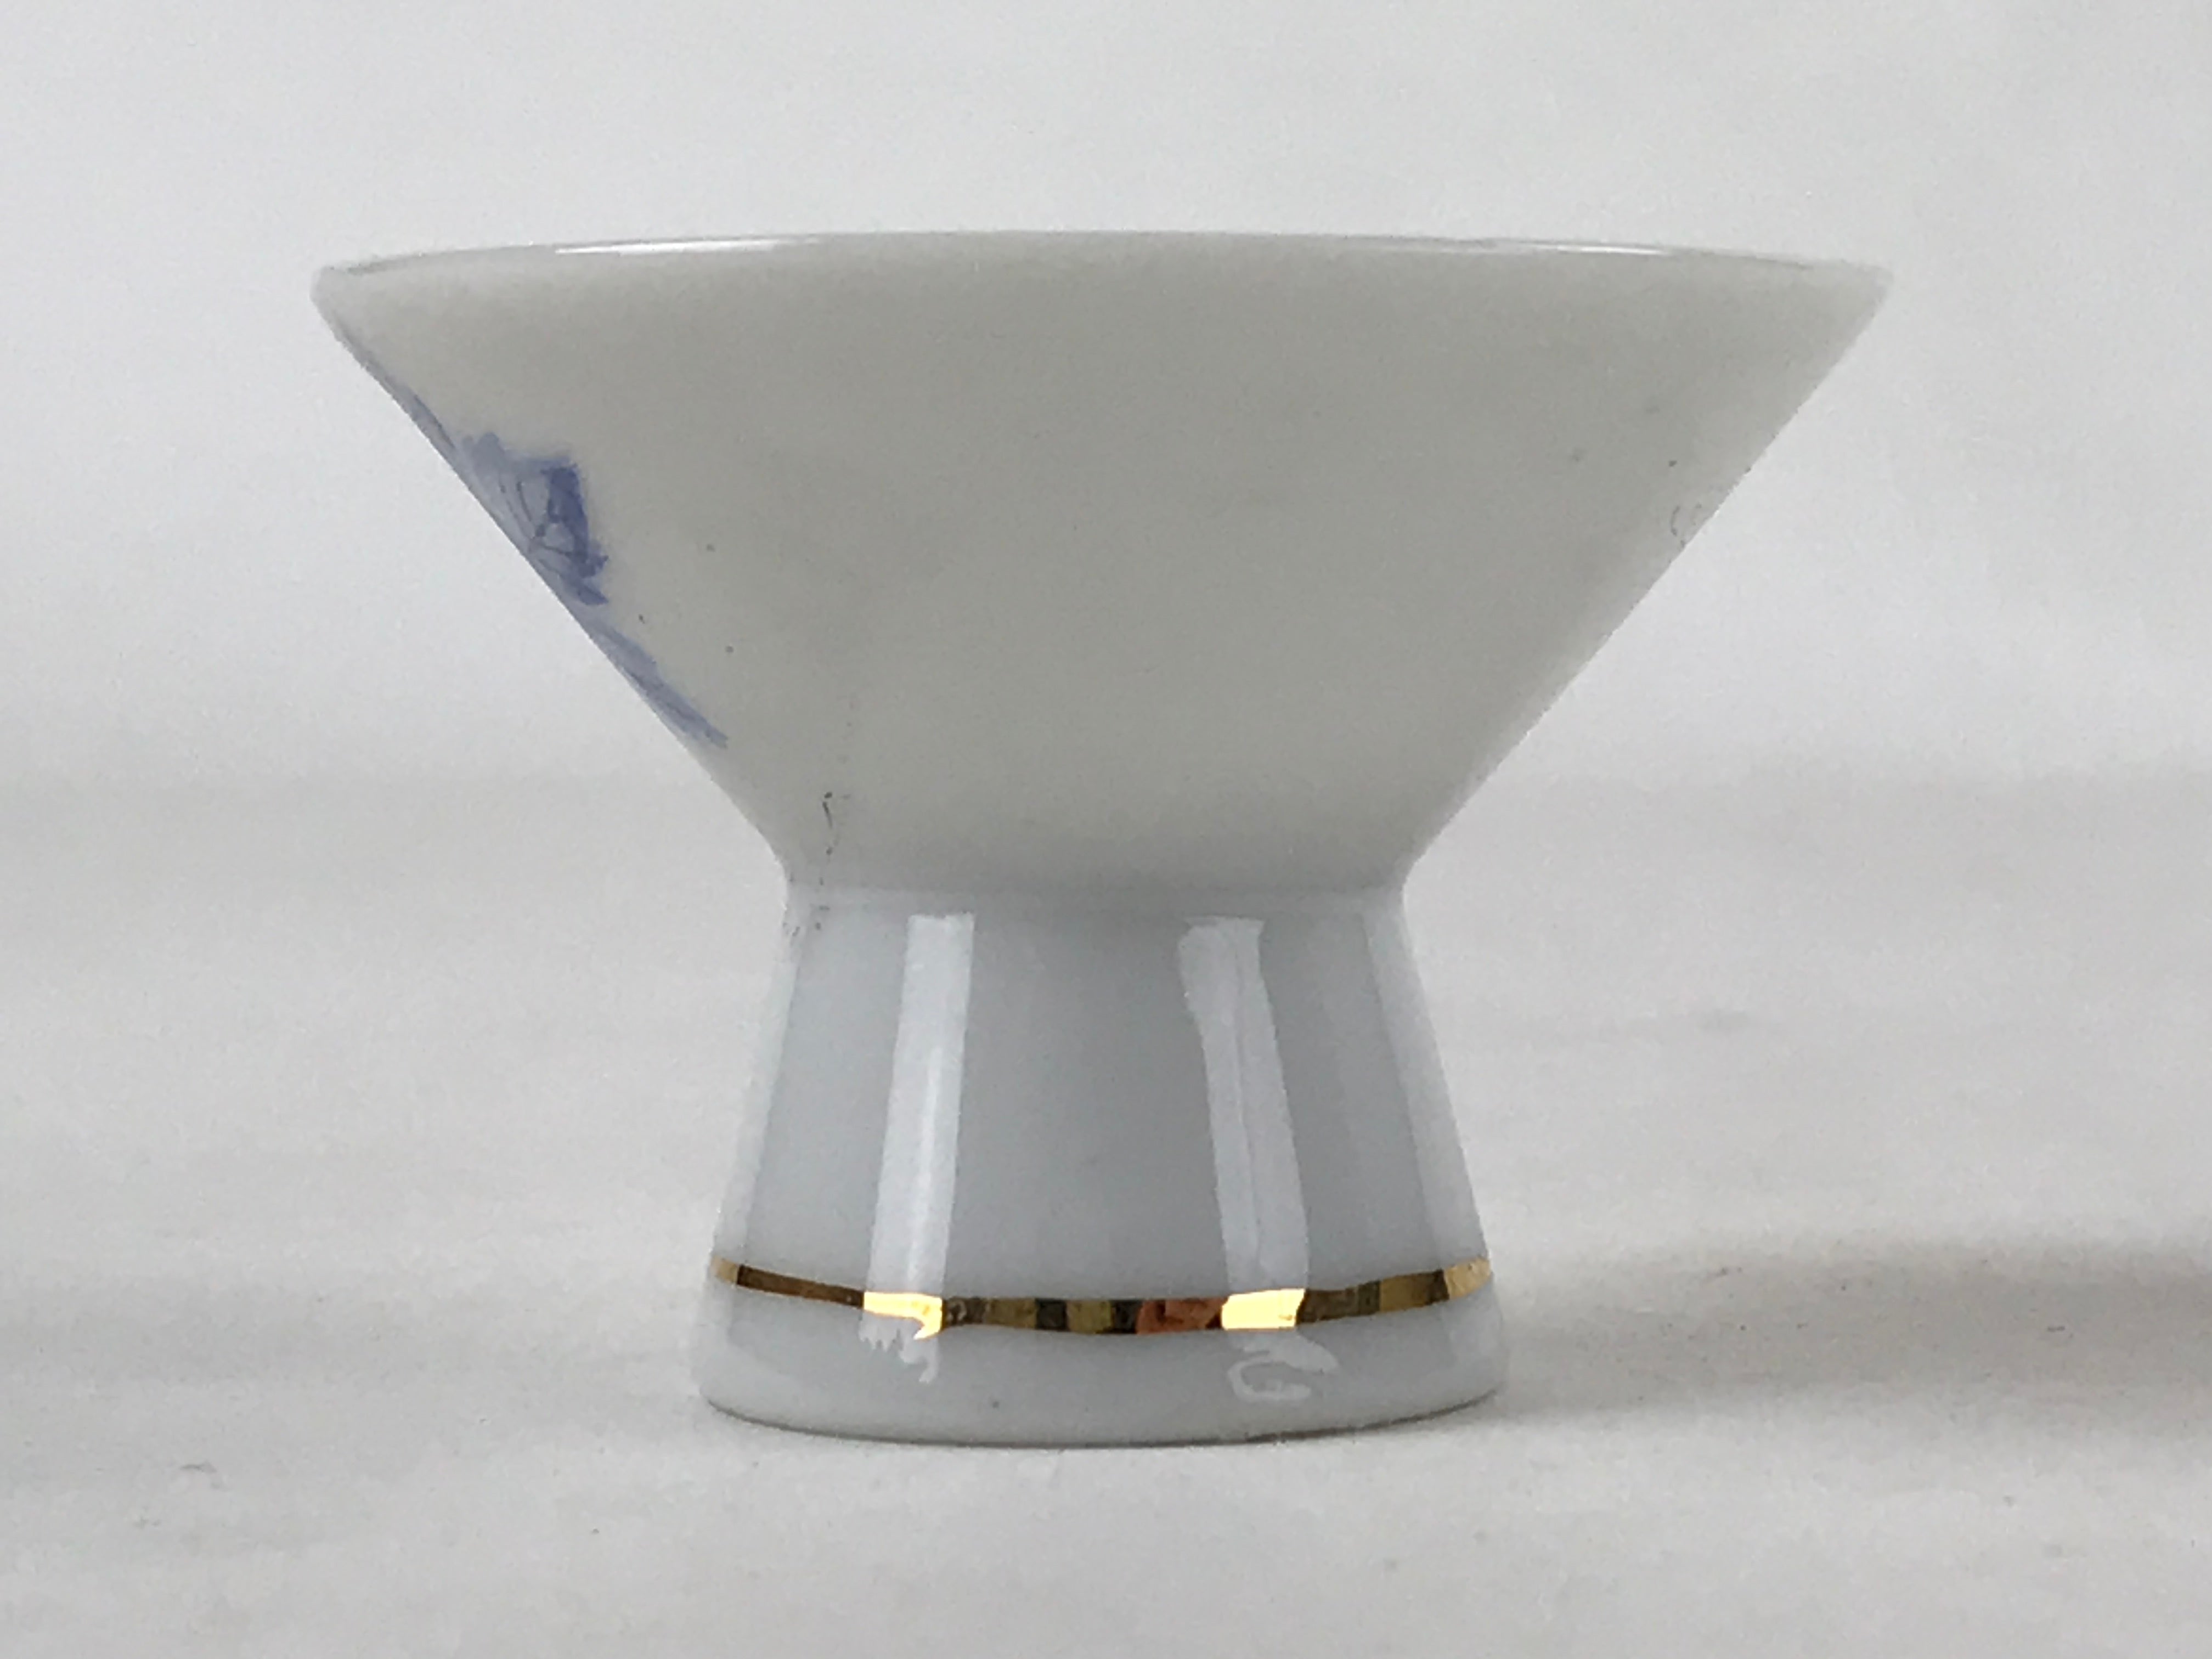 Japanese Porcelain Sake Cup Vtg Wan Ochoko Guinomi White Gold Blue Grapes G123